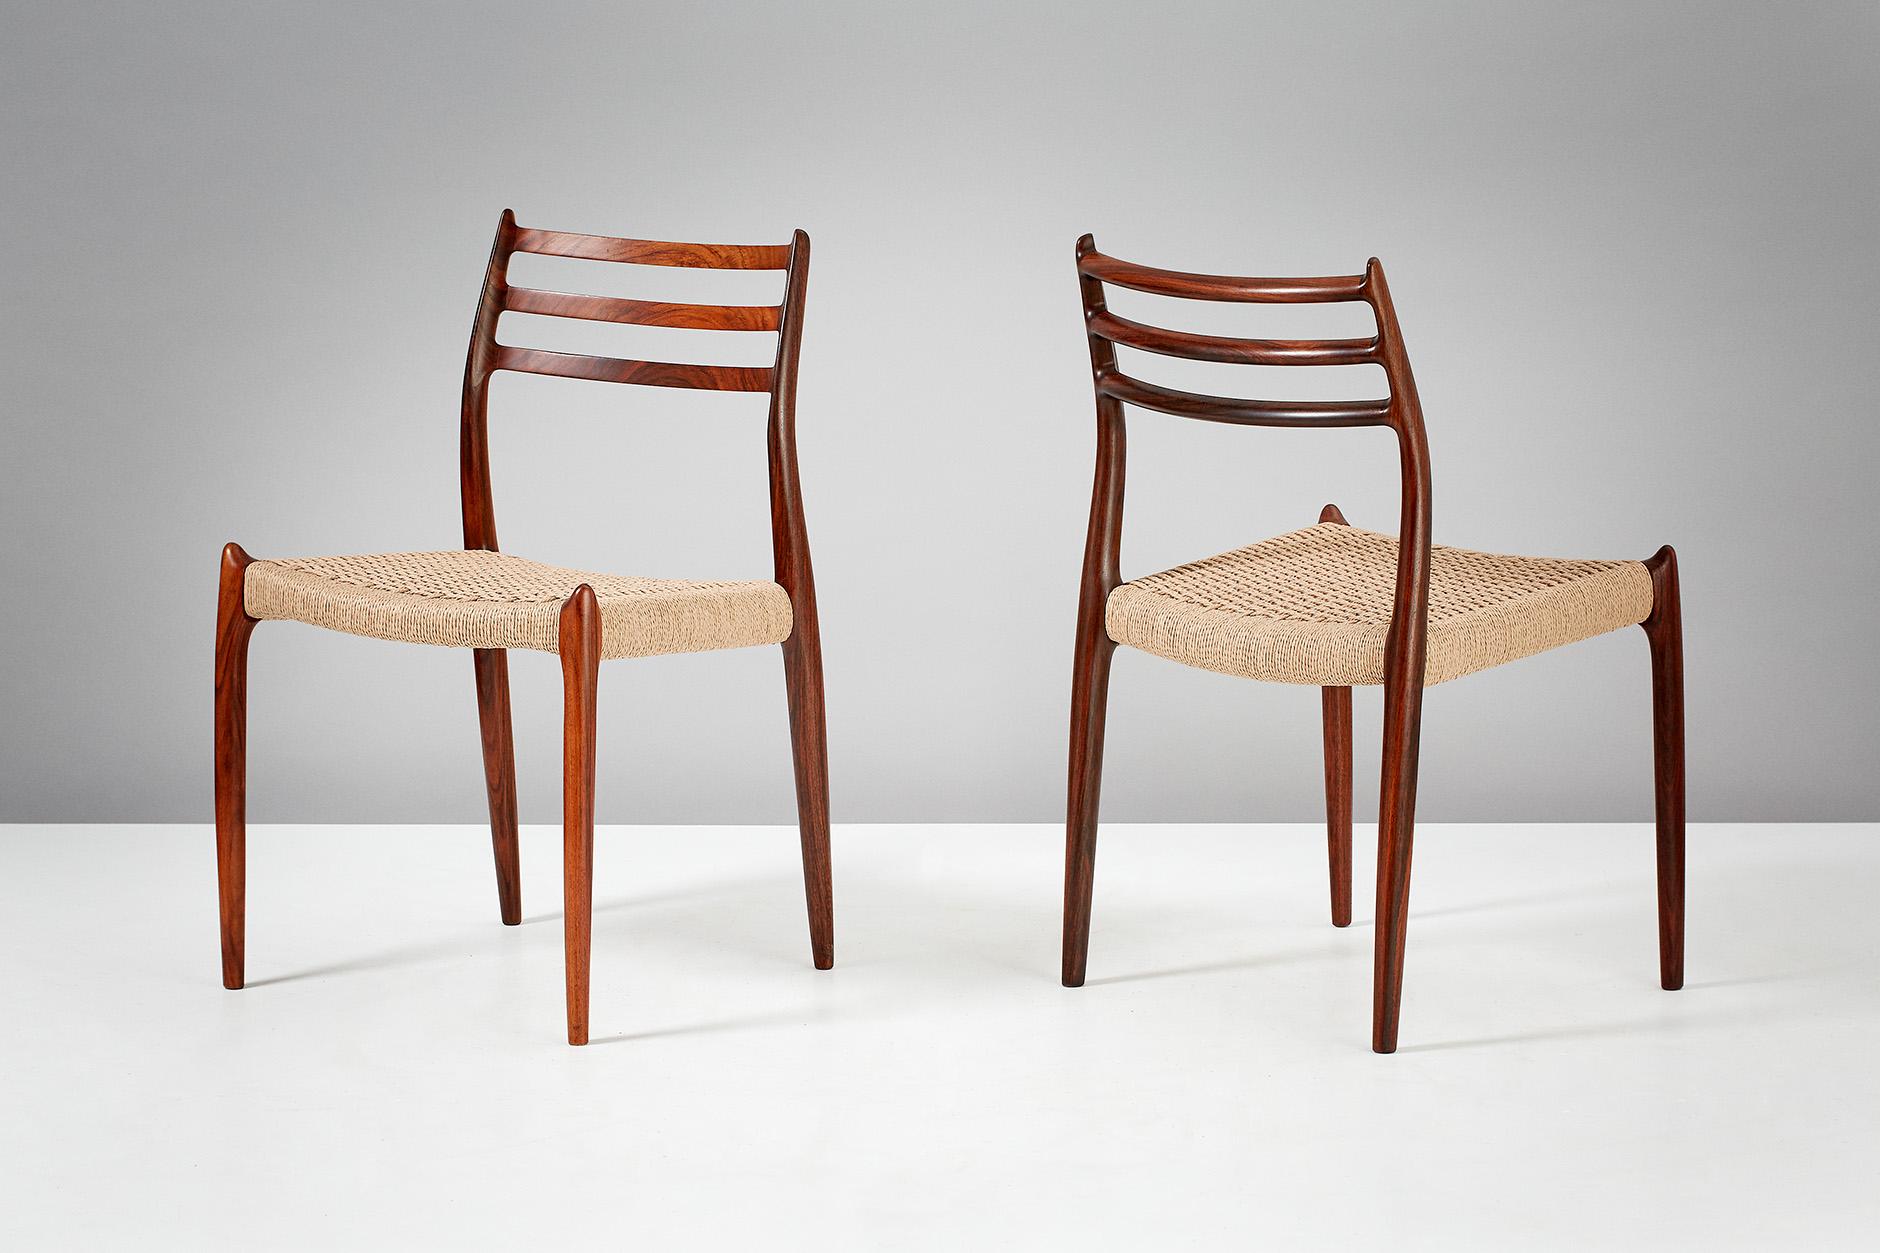 Niels O. Møller

Esszimmerstühle Modell 78, 1962.

Satz von acht Esszimmerstühlen aus Palisanderholz, entworfen von Niels O. Møller für J.L. Moller Mobelfabrik, Dänemark, 1962. Die Sitze sind aus ungefärbtem, natürlichem dänischem Papierkord